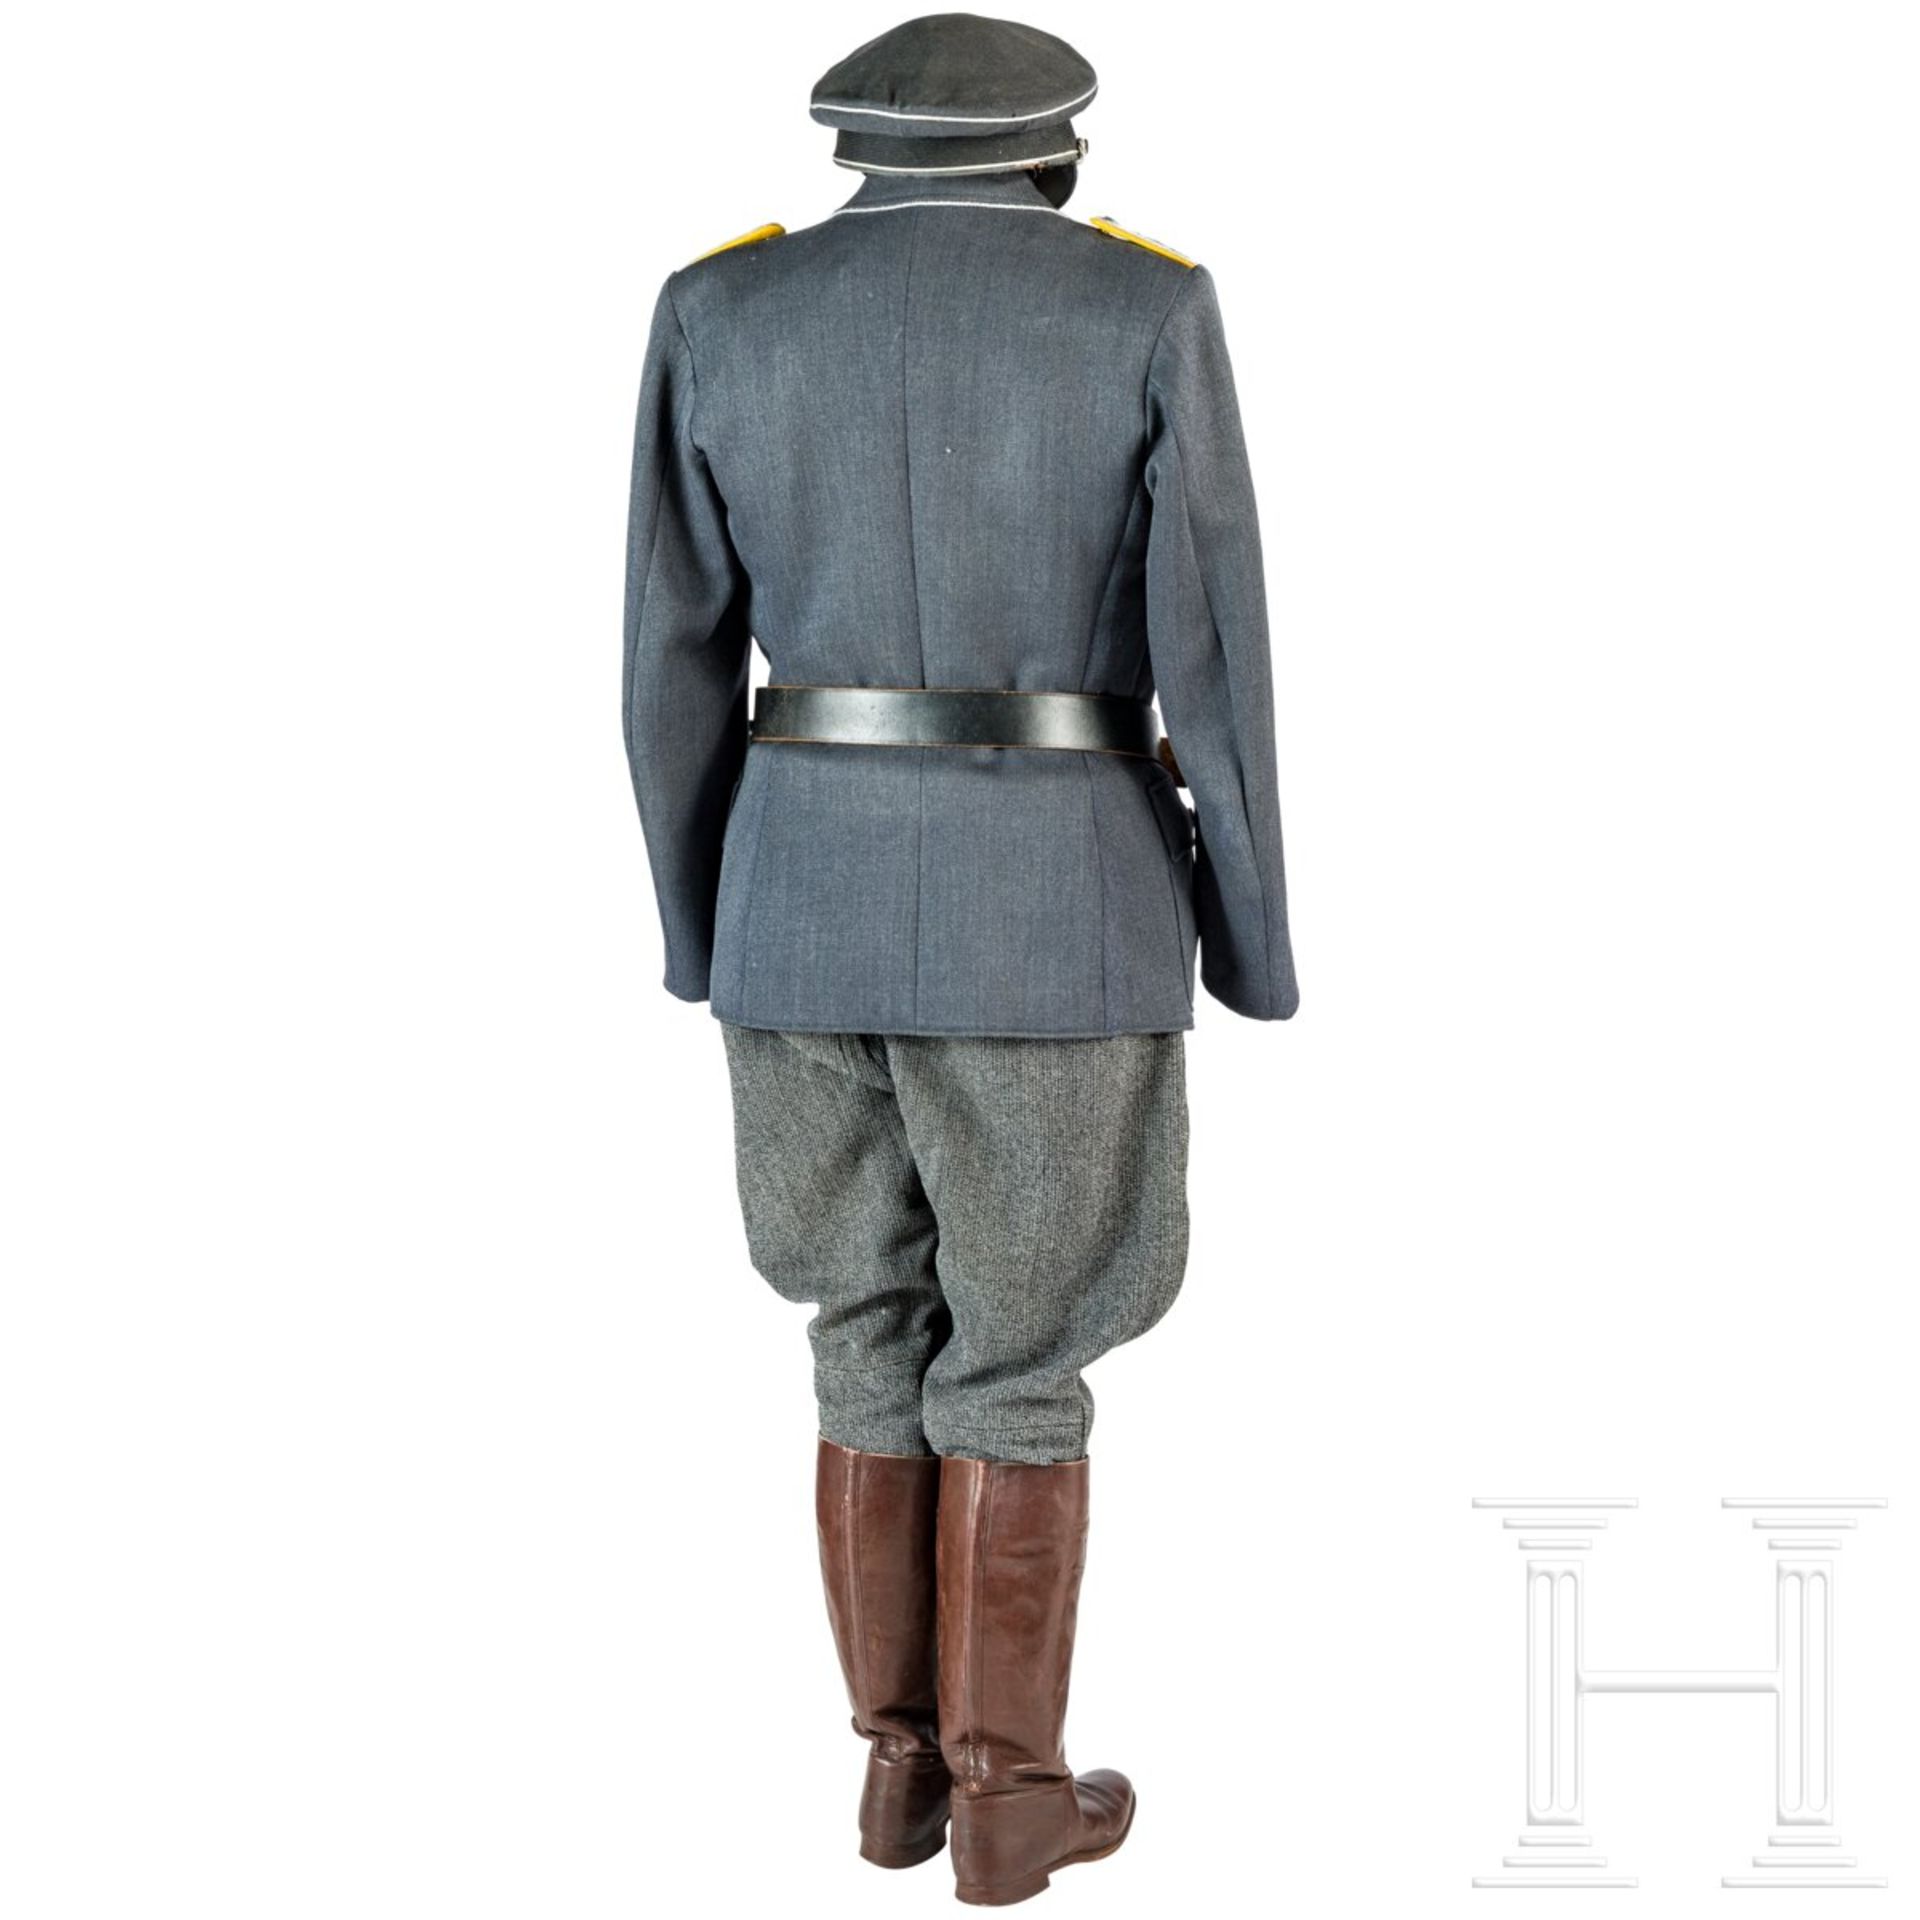 Uniformensemble für einen Hauptmann der Flieger- oder Fallschirmtruppe - Image 5 of 9